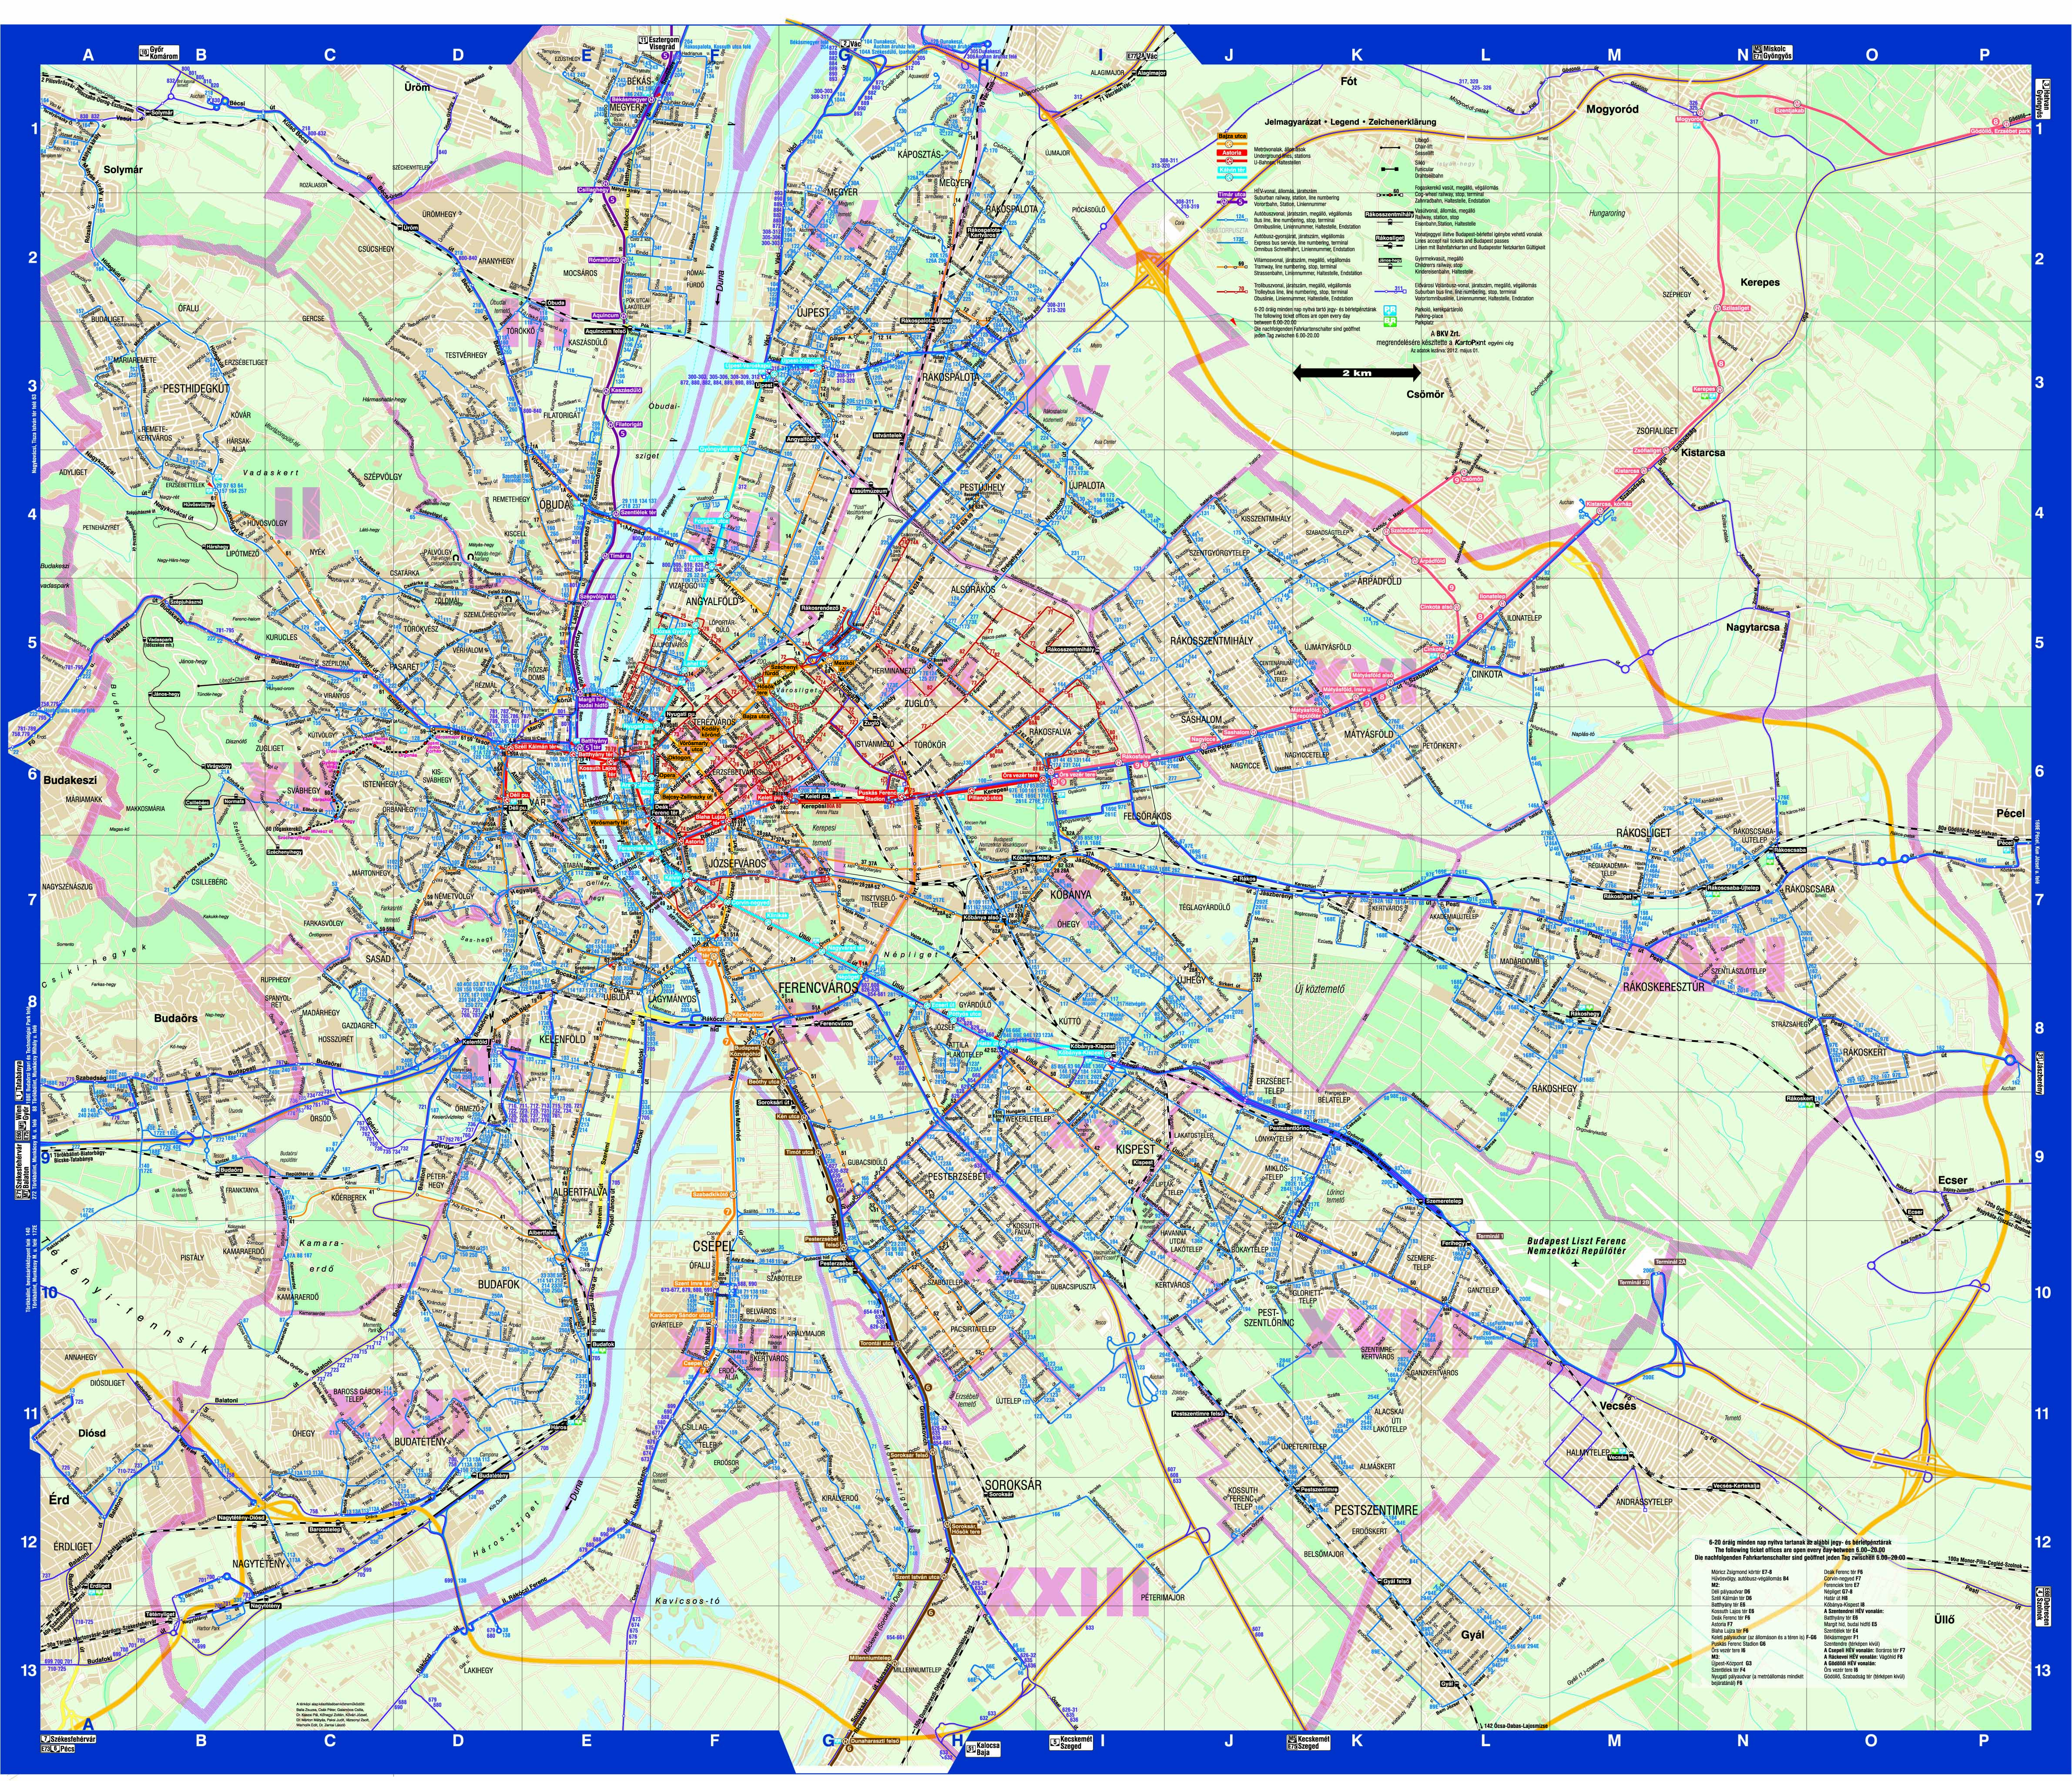 budapest térkép tömegközlekedéssel Budapest közösségi közlekekedésének utasterheltsége budapest térkép tömegközlekedéssel